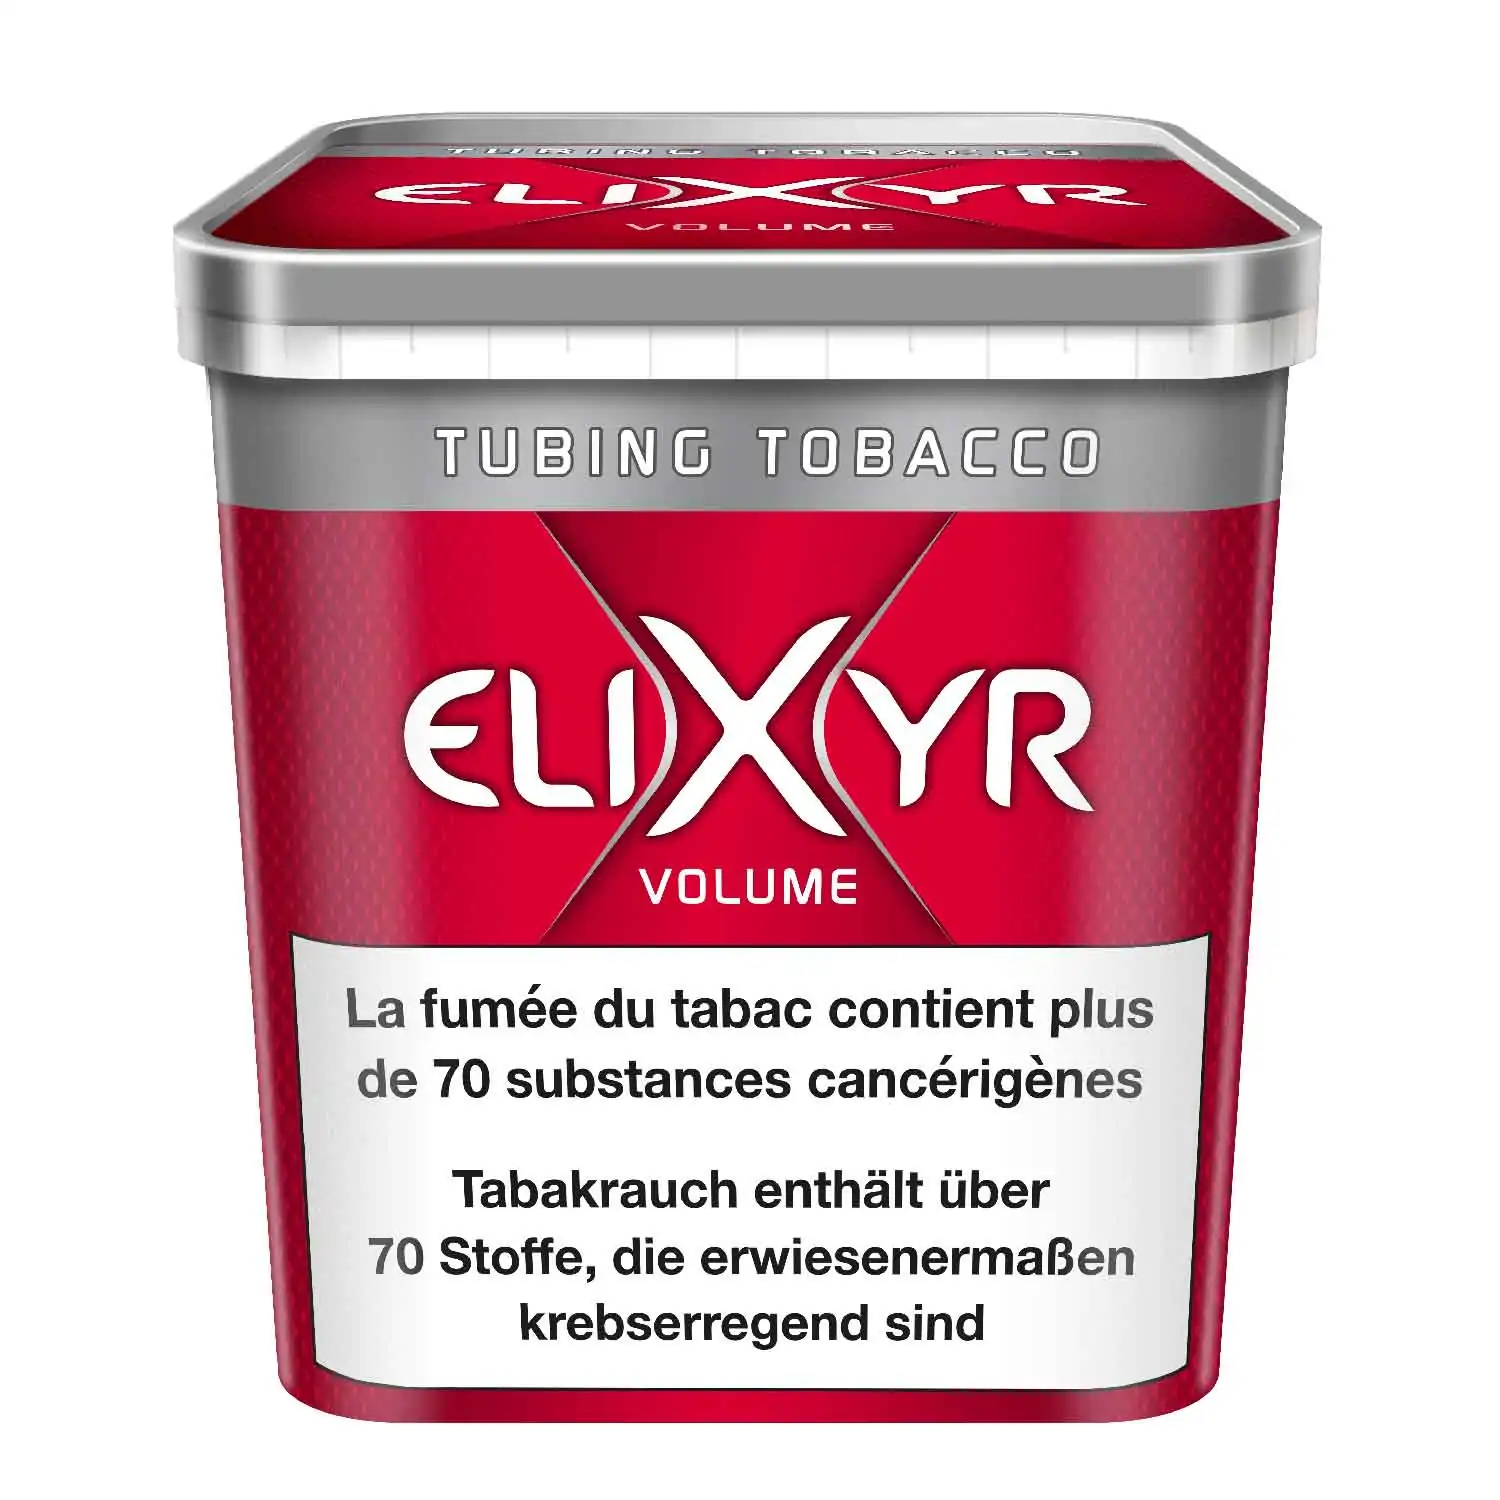 Elixyr volume maxx 400g - Buy at Real Tobacco